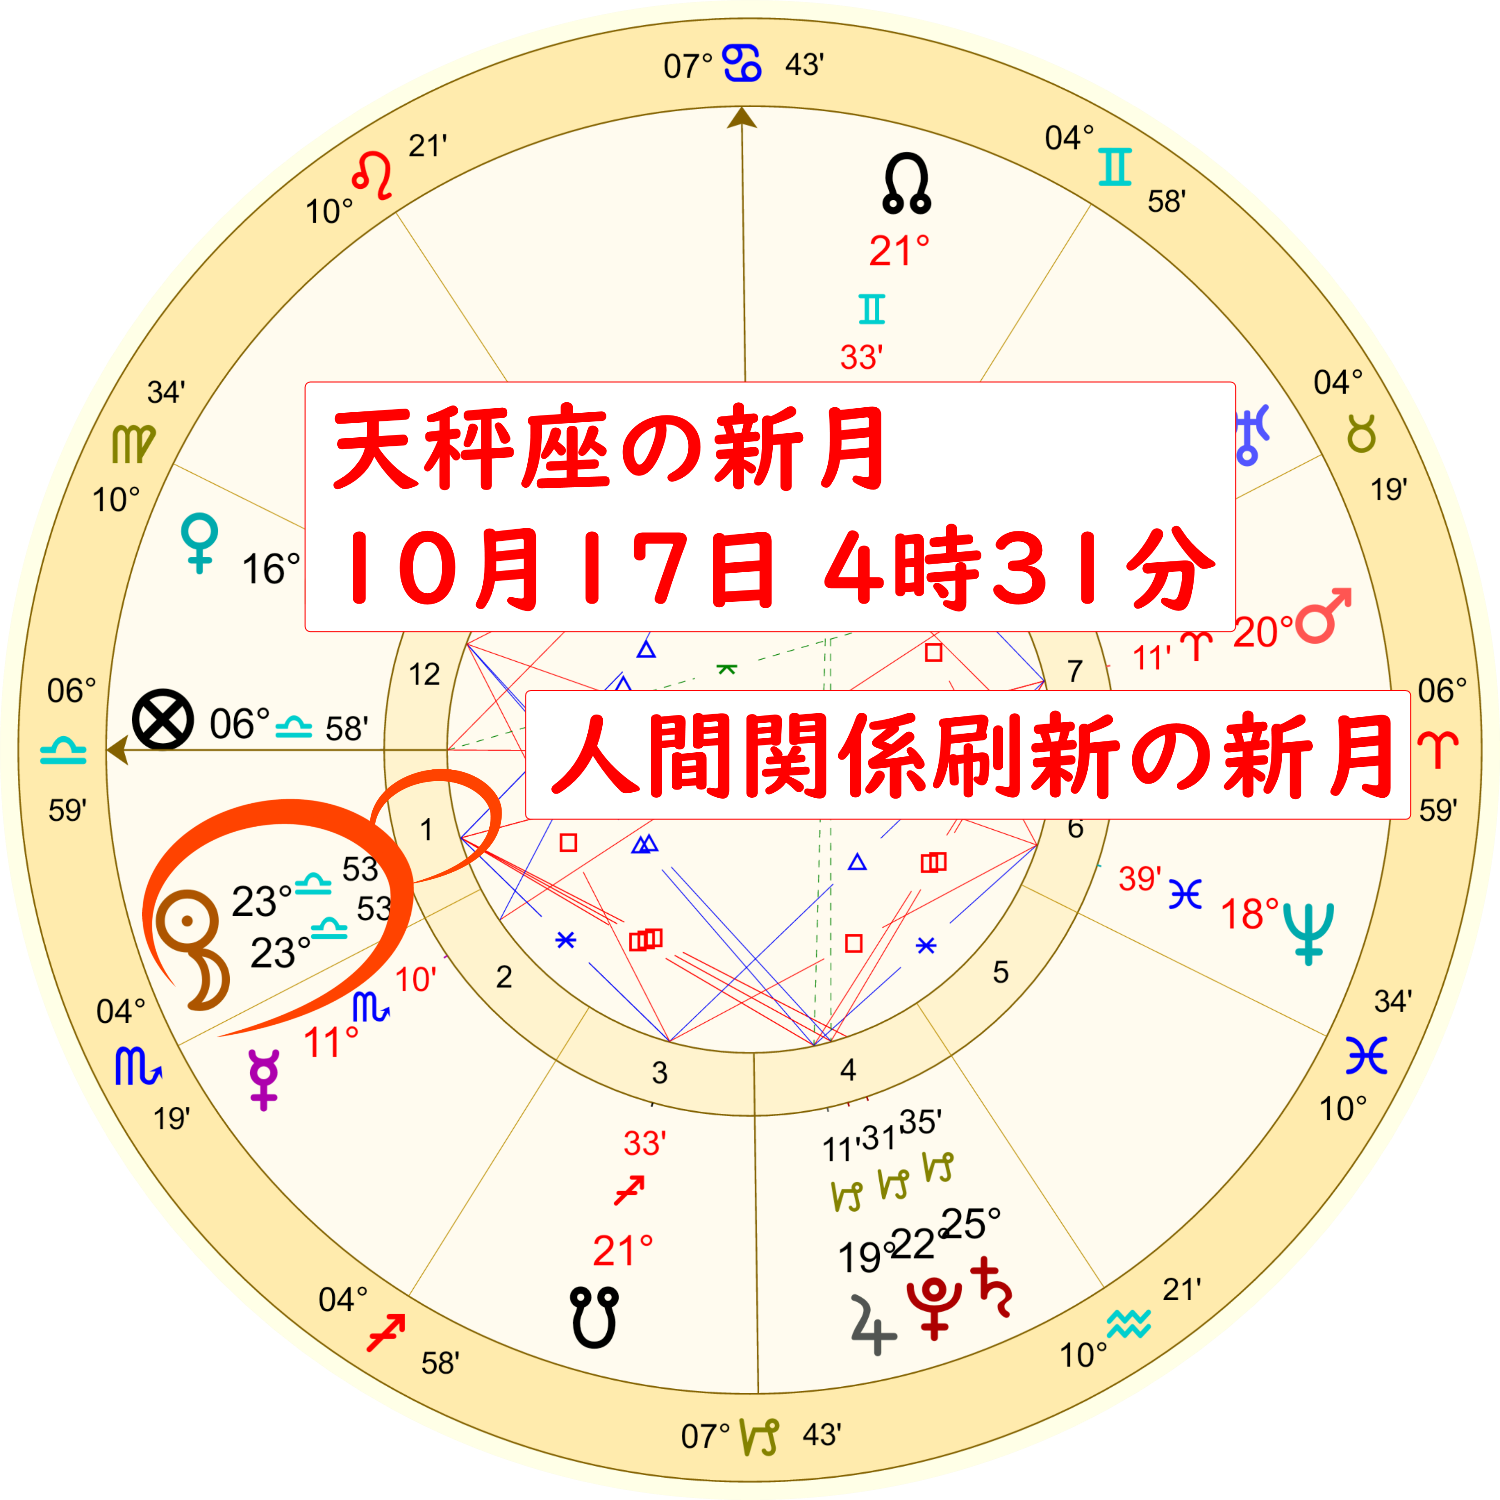 2020年10月17日の天秤座の新月のホロスコープ解説画像